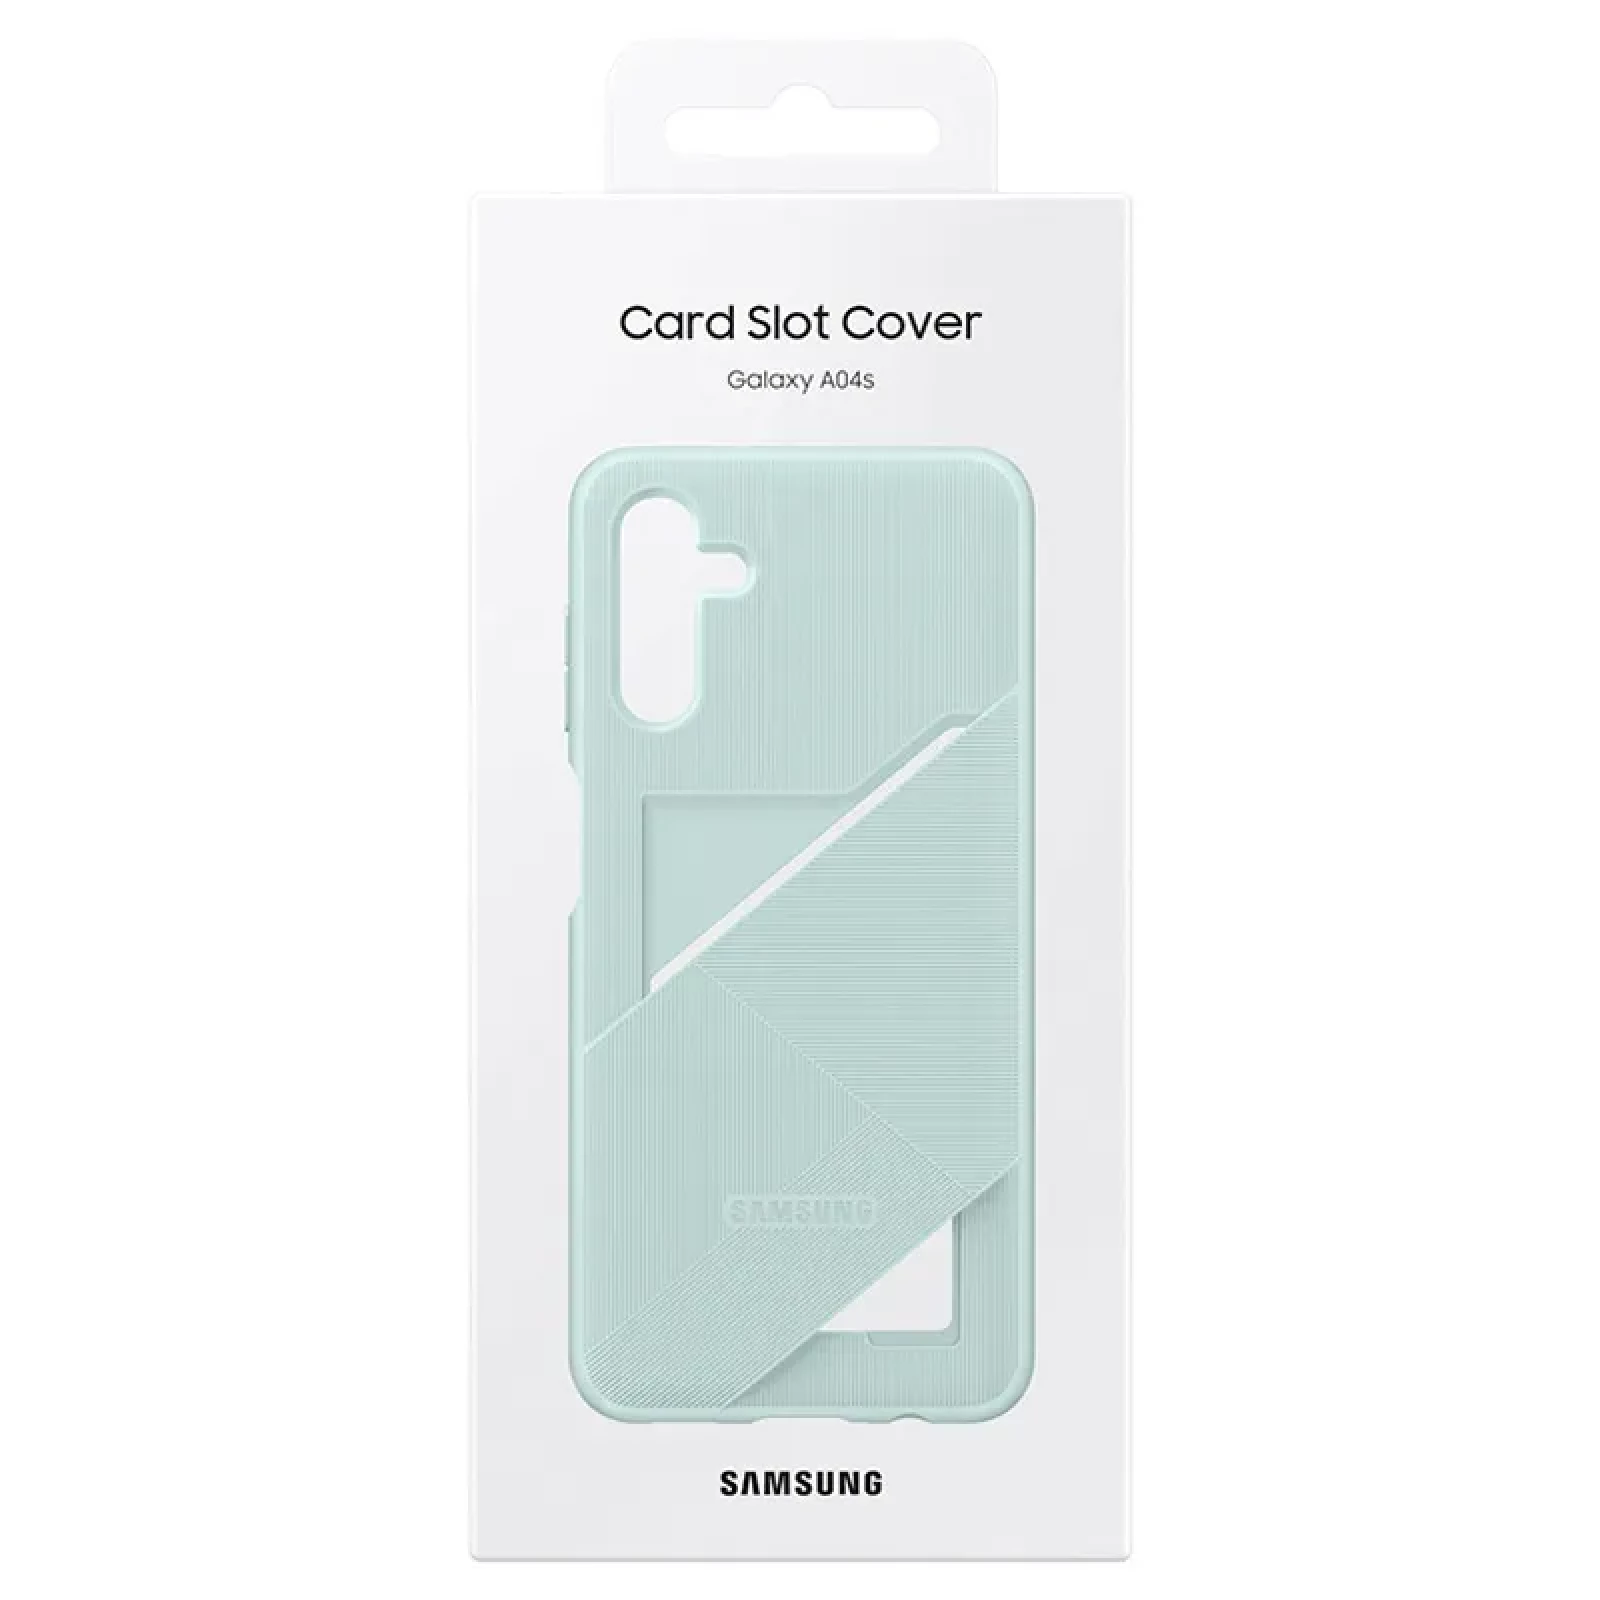 Оригинален гръб Samsung Card Slot Cover за Galaxy A04s - Зелен, EF-OA047TGE